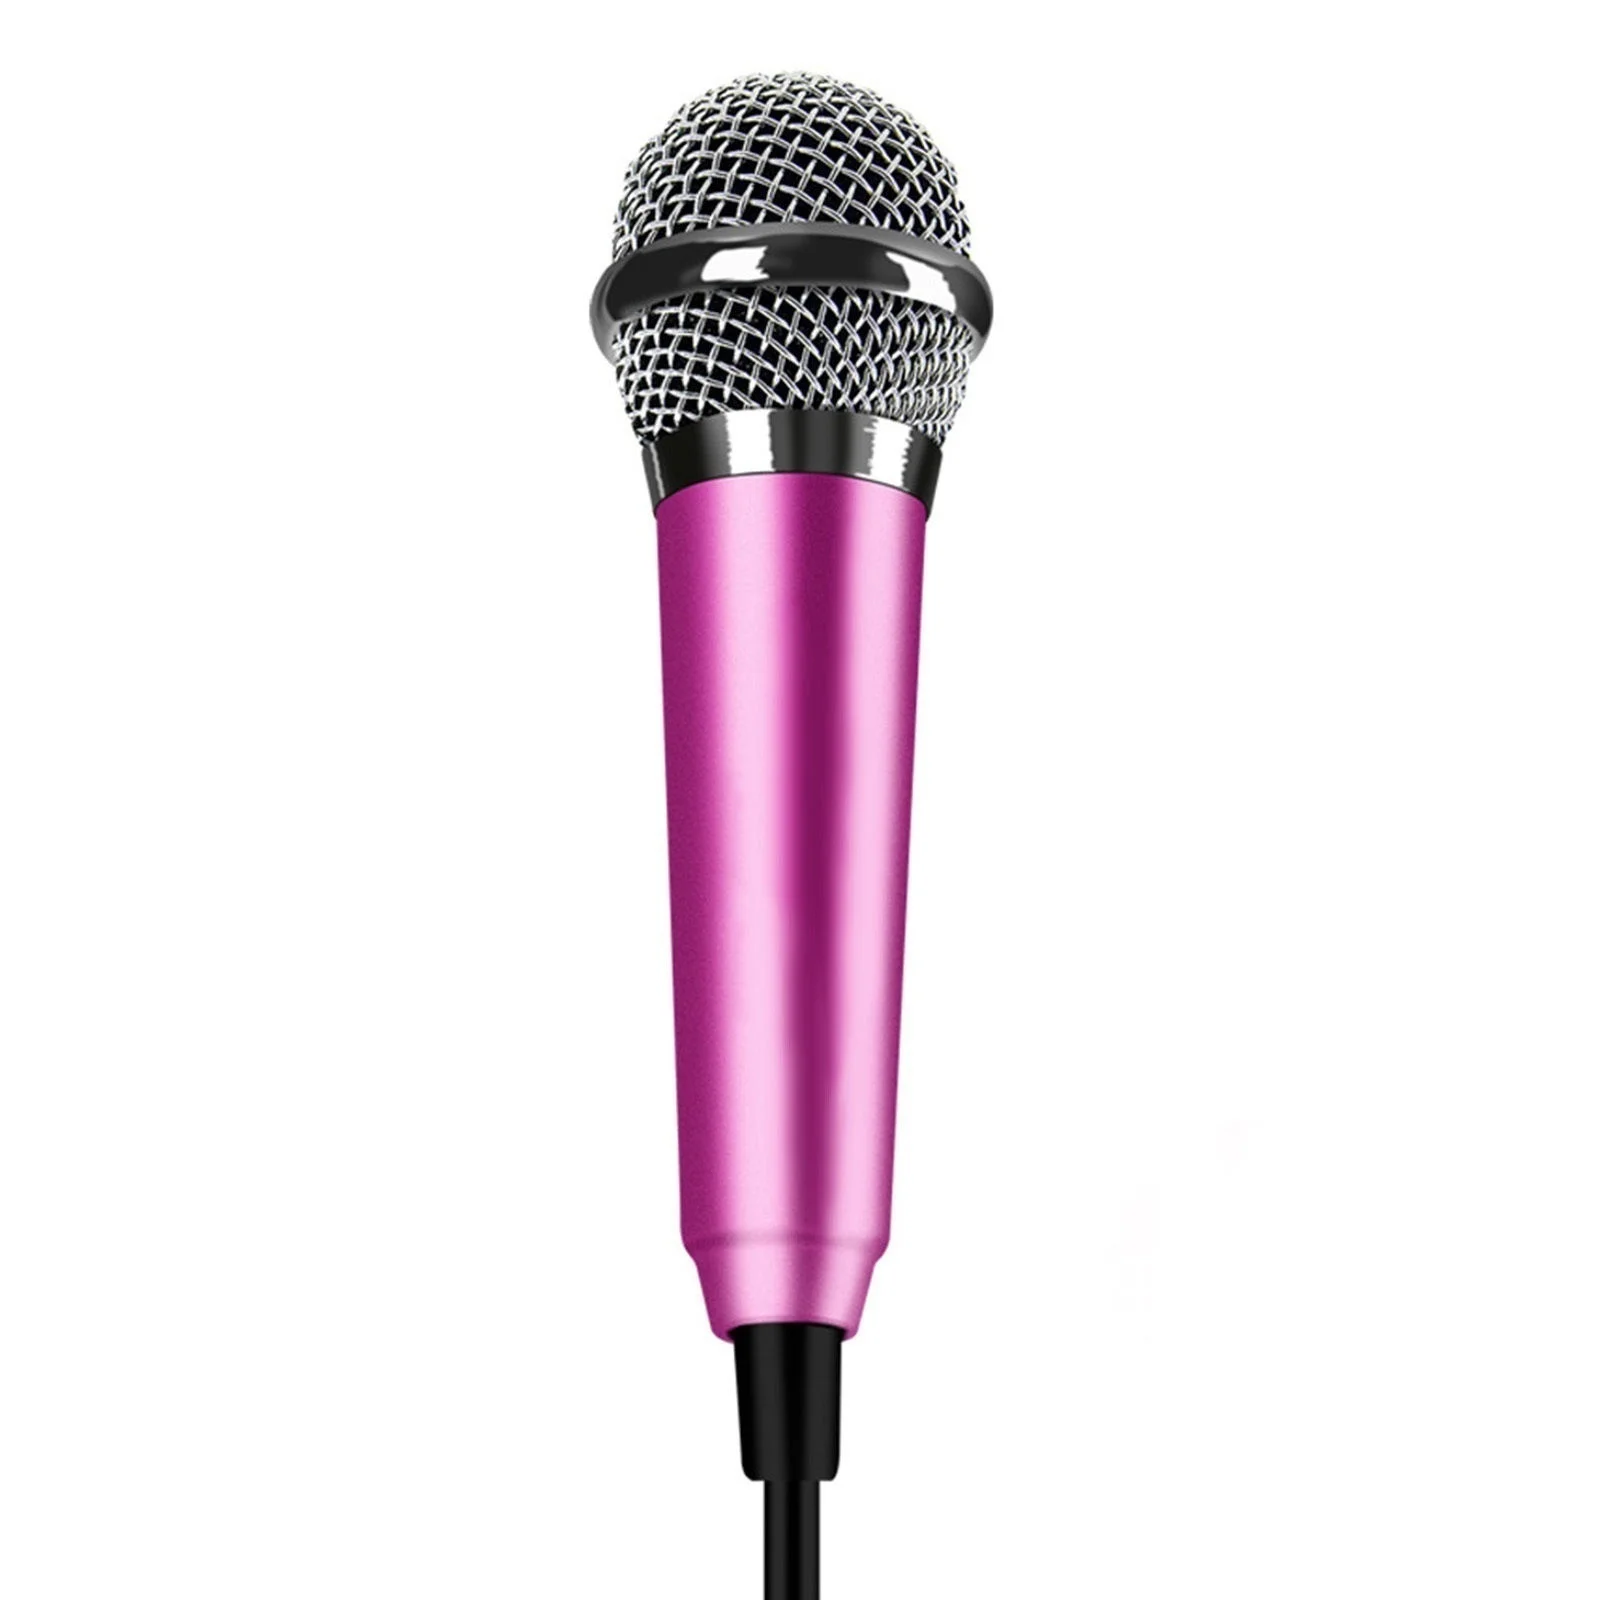 Детские Мини микрофонные ИГРУШКИ КАРАОКЕ USB Мини конденсаторный микрофон для караоке музыкальная игрушка вечерние песни для телефона компьютер для ребенка подарок для девочки - Цвет: Pink